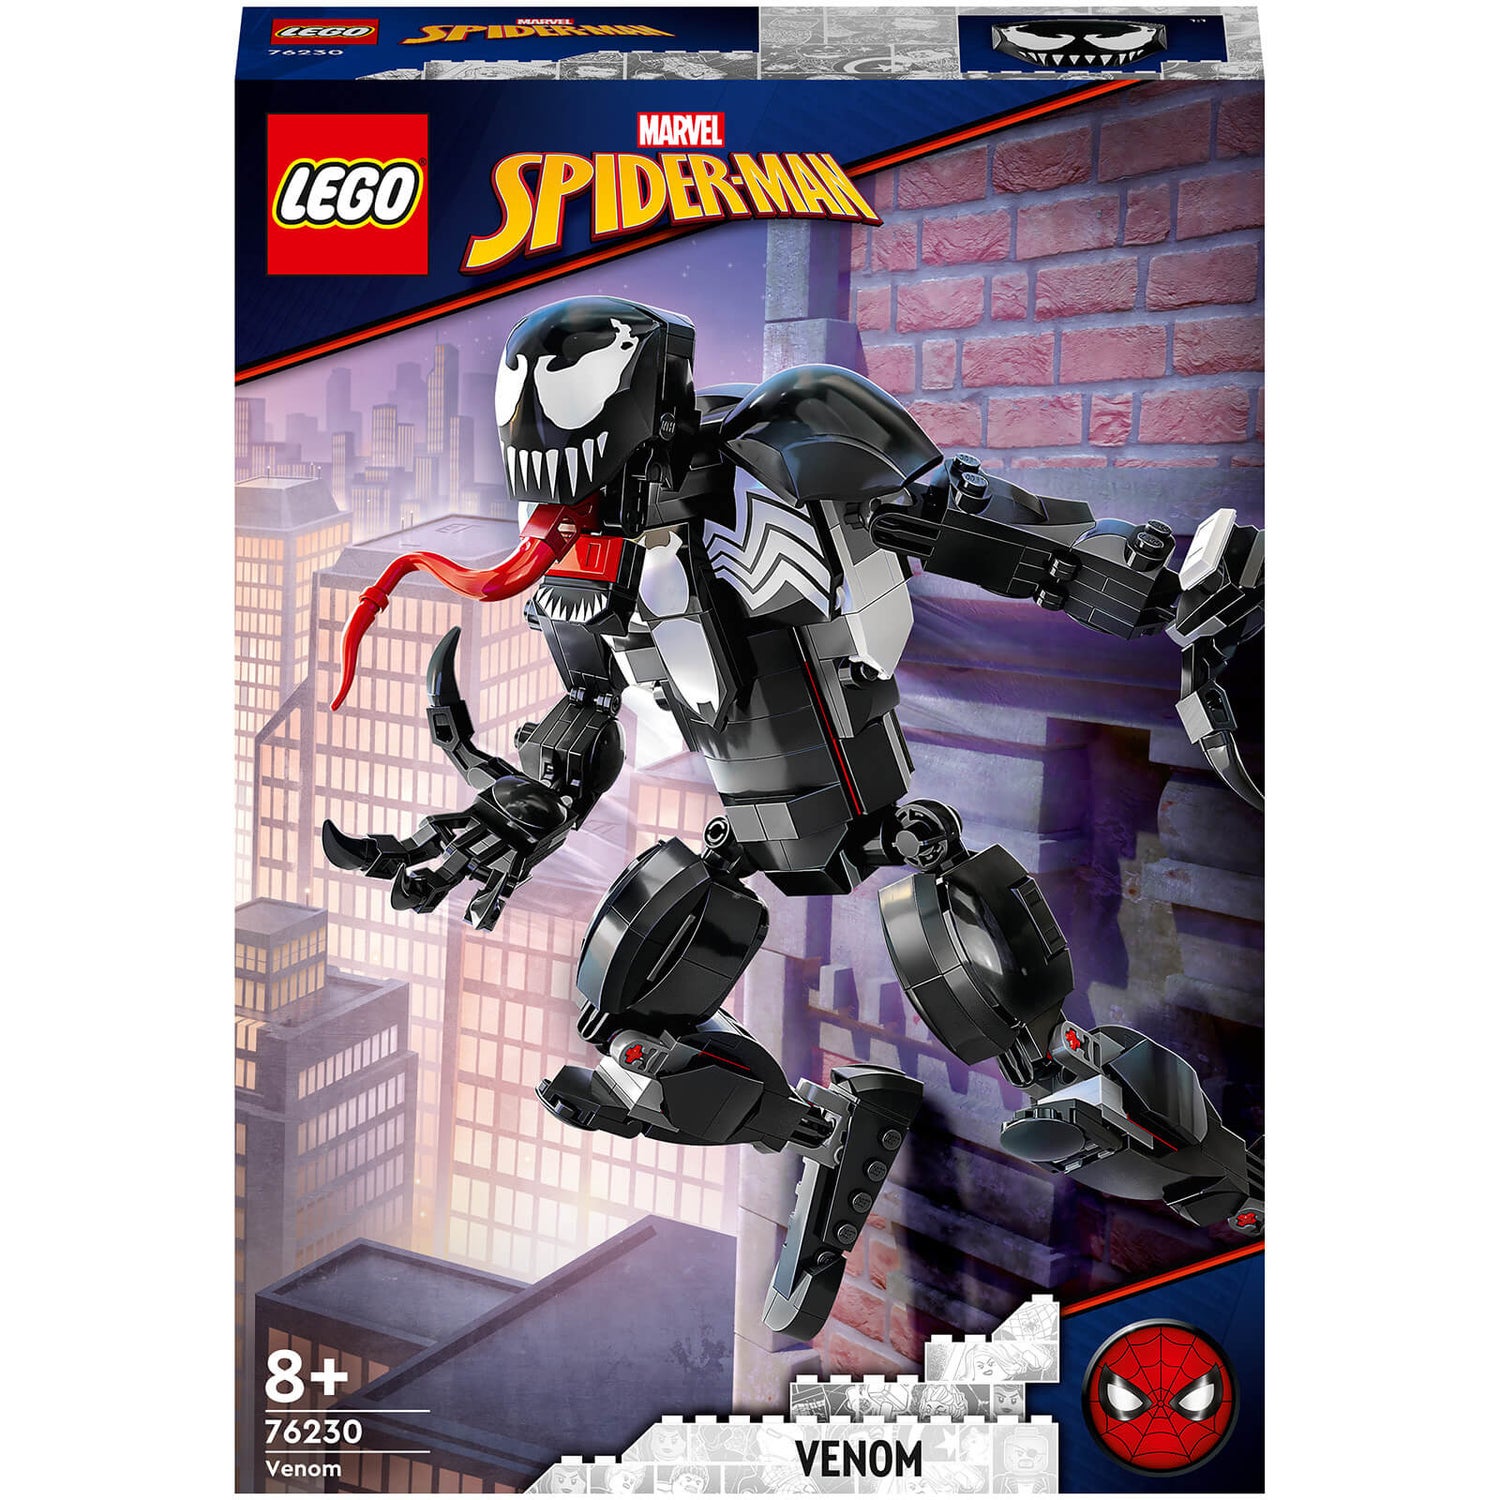 LEGO Marvel La Figurine de Venom, Figurine Alien à Construire, Cadeau Super-Héros (76230)